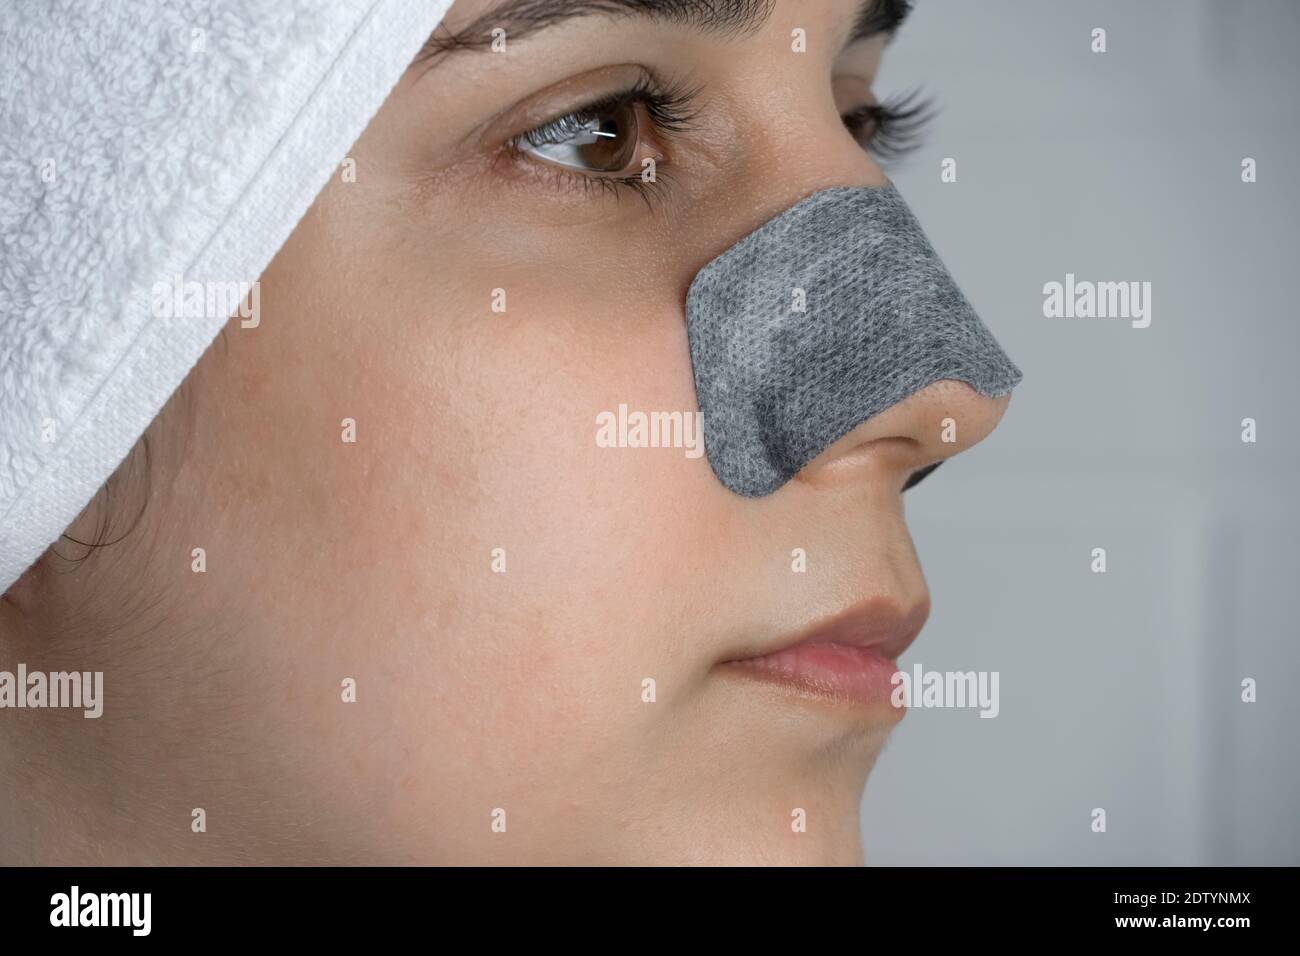 Une femme colle une bande de nettoyage sur son nez. Points noirs sur le nez.  Fille sans maquillage dans la salle de bains. Soins de la peau, problèmes  de peau, nettoyage. Naturel